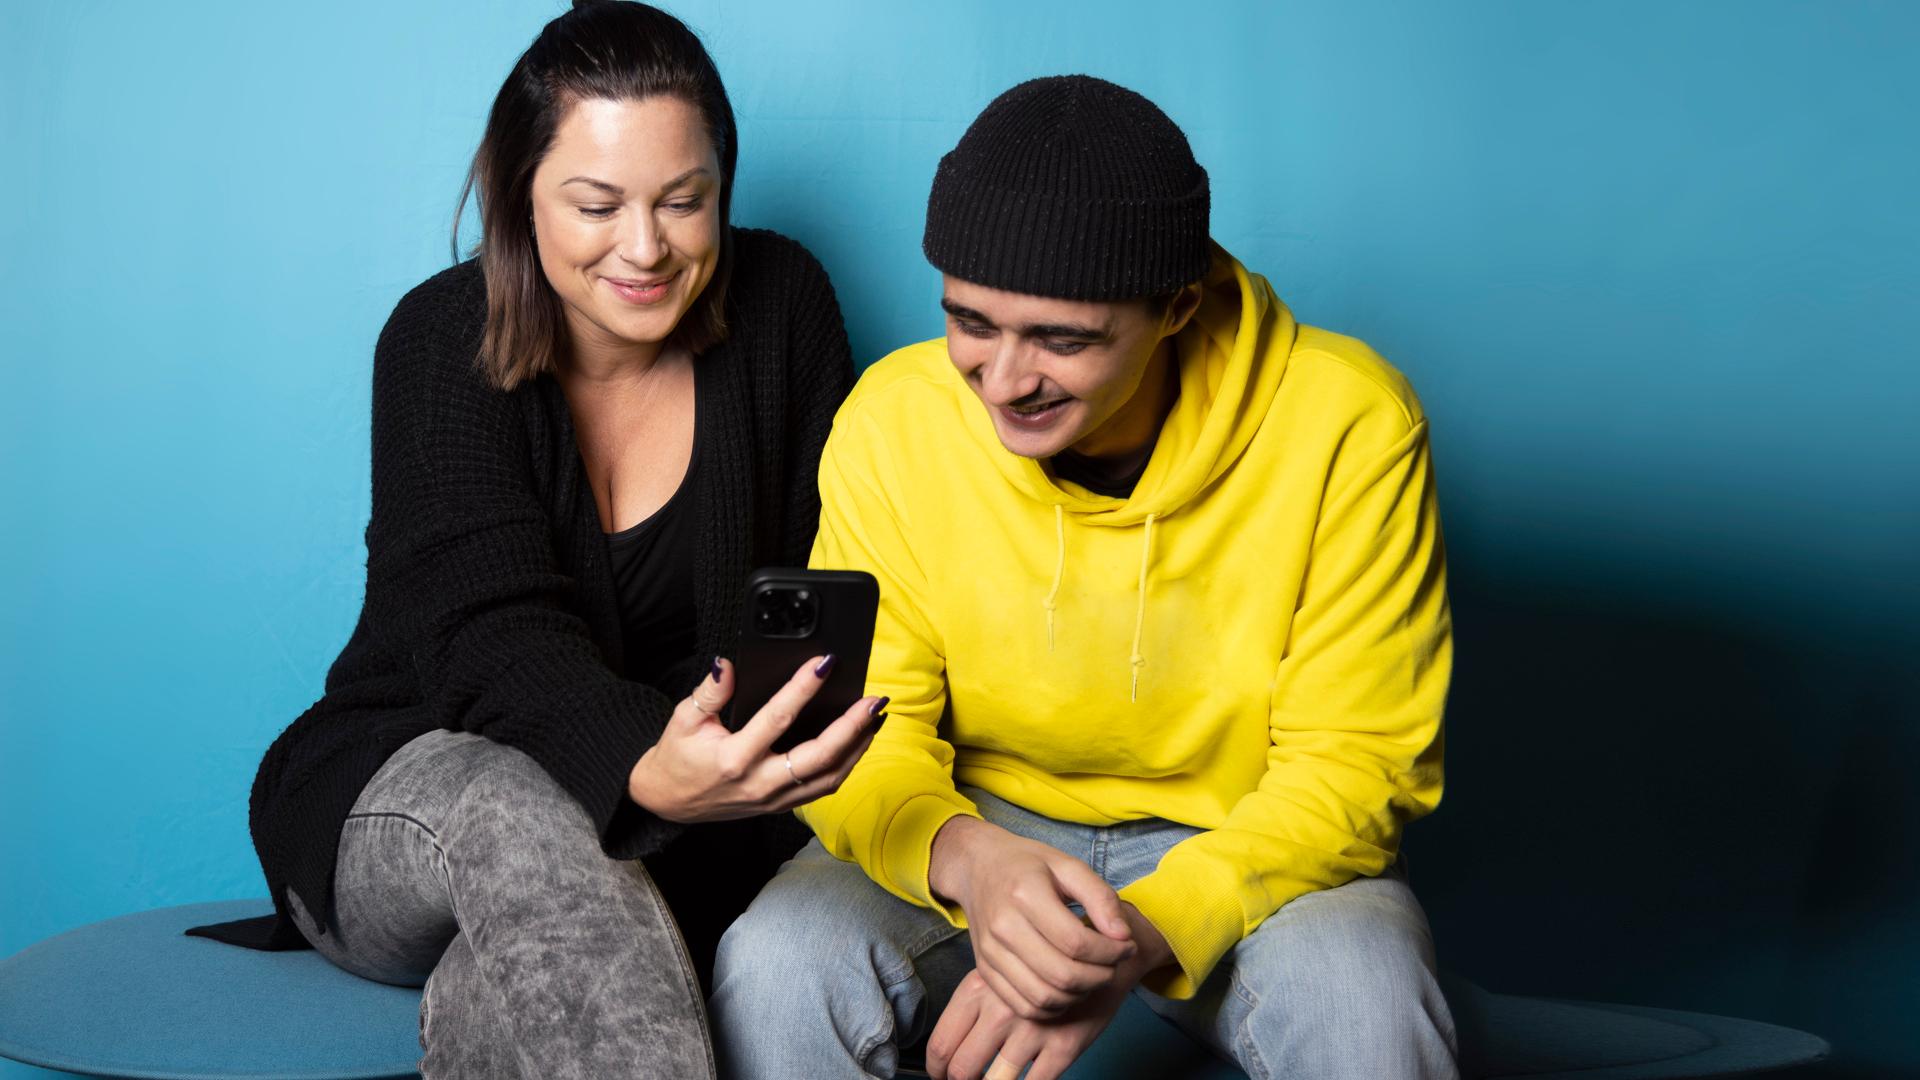 En ung man i gul tröja och svart mössa sitter bredvid en ung kvinna i svart tröja. De ler och tittar tillsammans på en mobiltelefon.